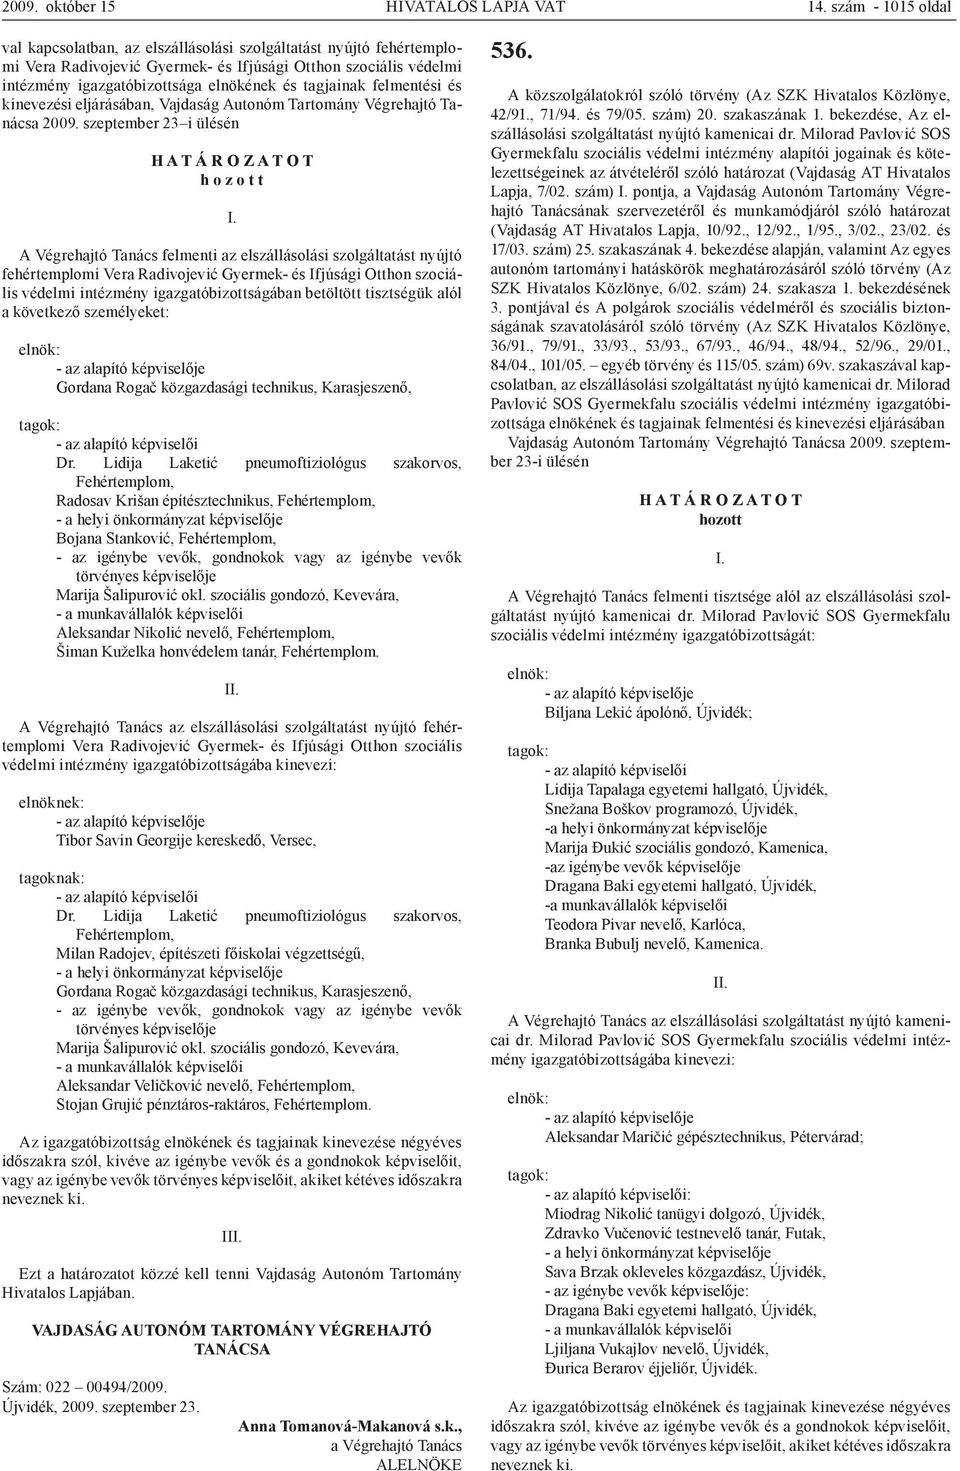 tagjainak felmentési és kinevezési eljárásában, Vajdaság Autonóm Tartomány Végrehajtó Tanácsa 2009.